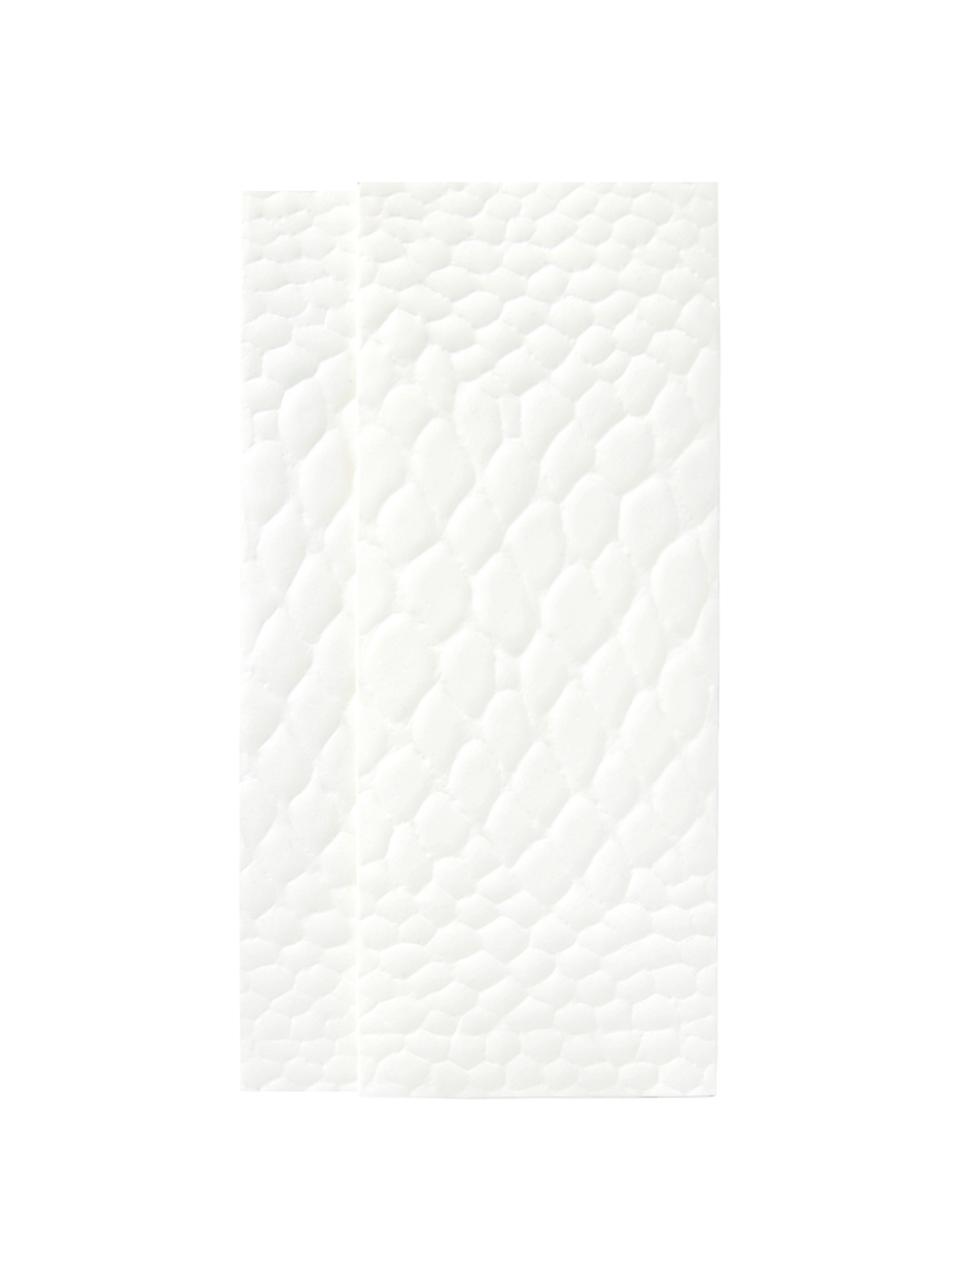 Umschlag Snake, Papier, Weiß, 23 x 12 cm